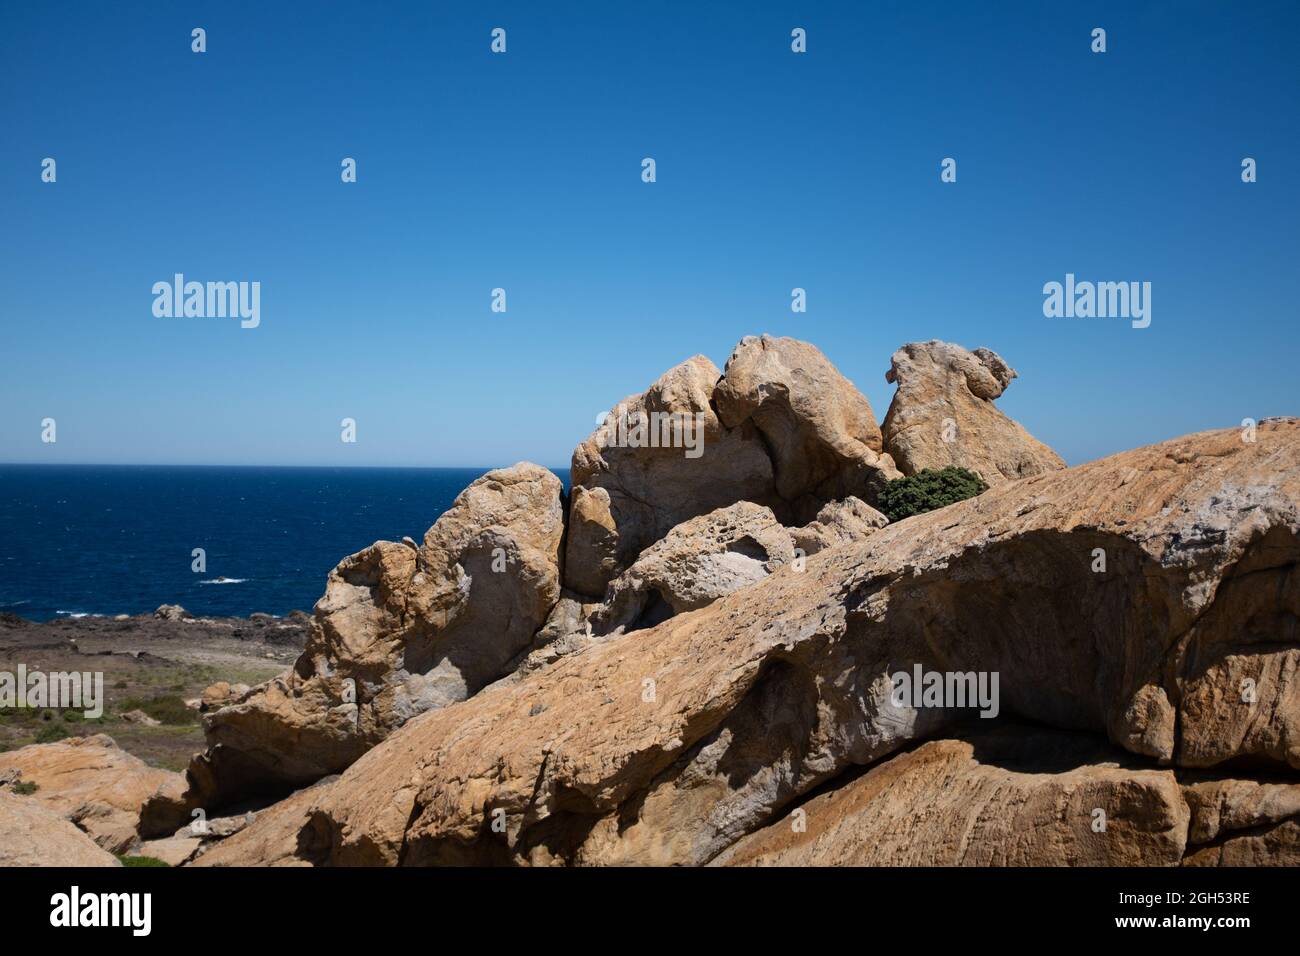 Rock formations at the Cap de Creus, Cadaqués, Costa Brava, Catalonia, Spain Stock Photo